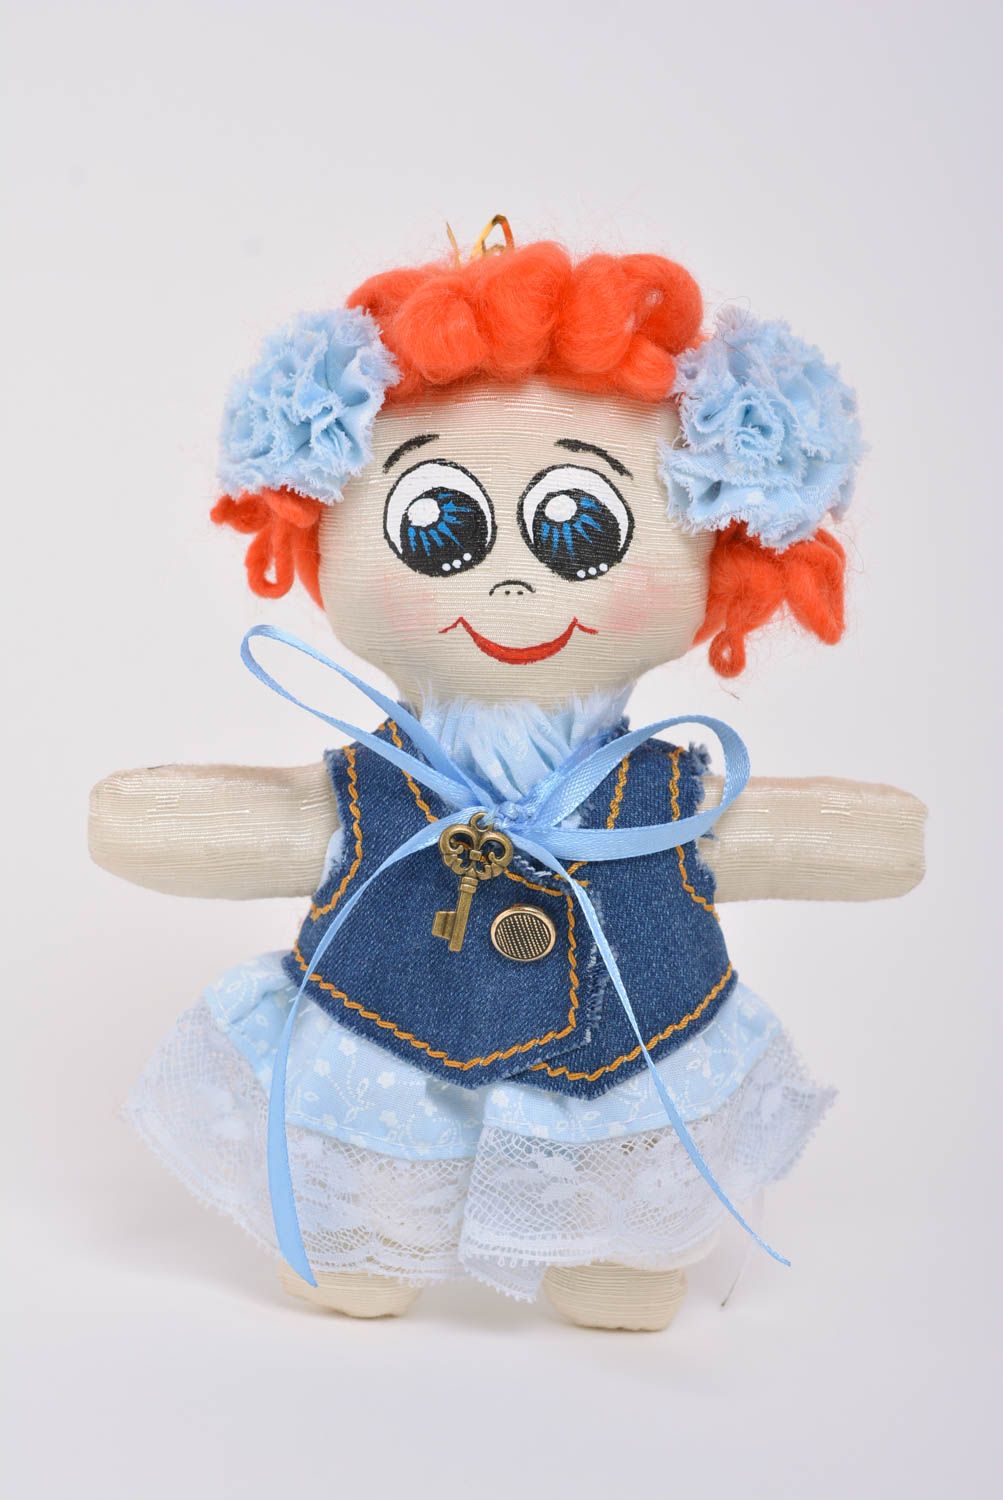 Игрушка кукла из ткани маленькая забавная в платьице красивая ручной работы фото 1